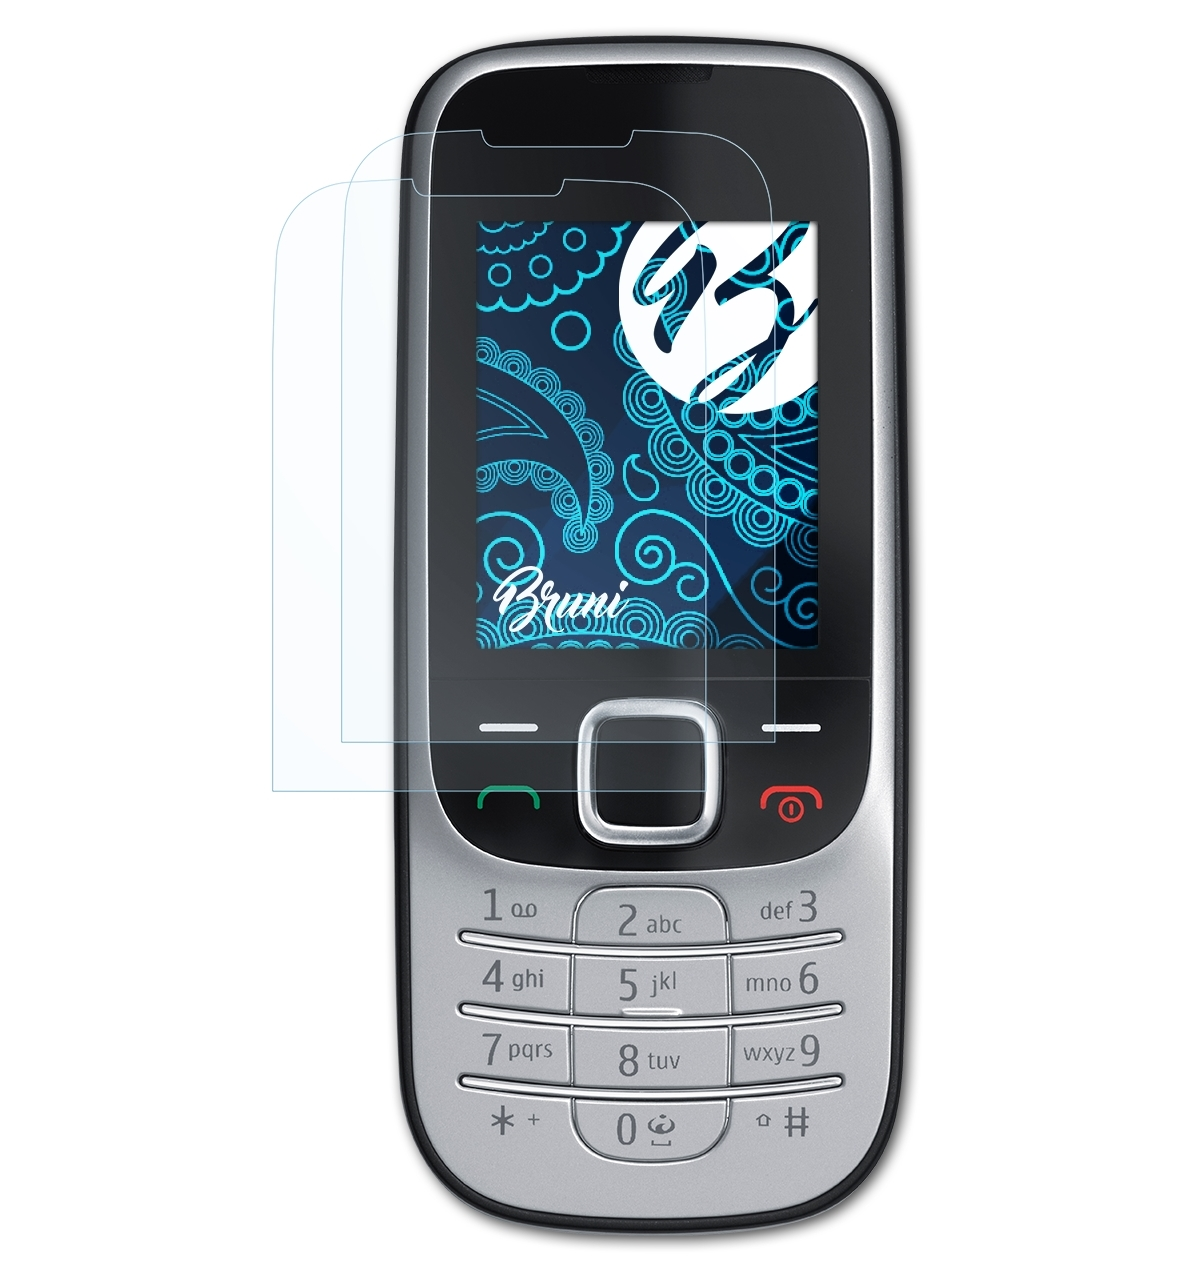 2x Nokia BRUNI 2330 Basics-Clear Schutzfolie(für Classic)